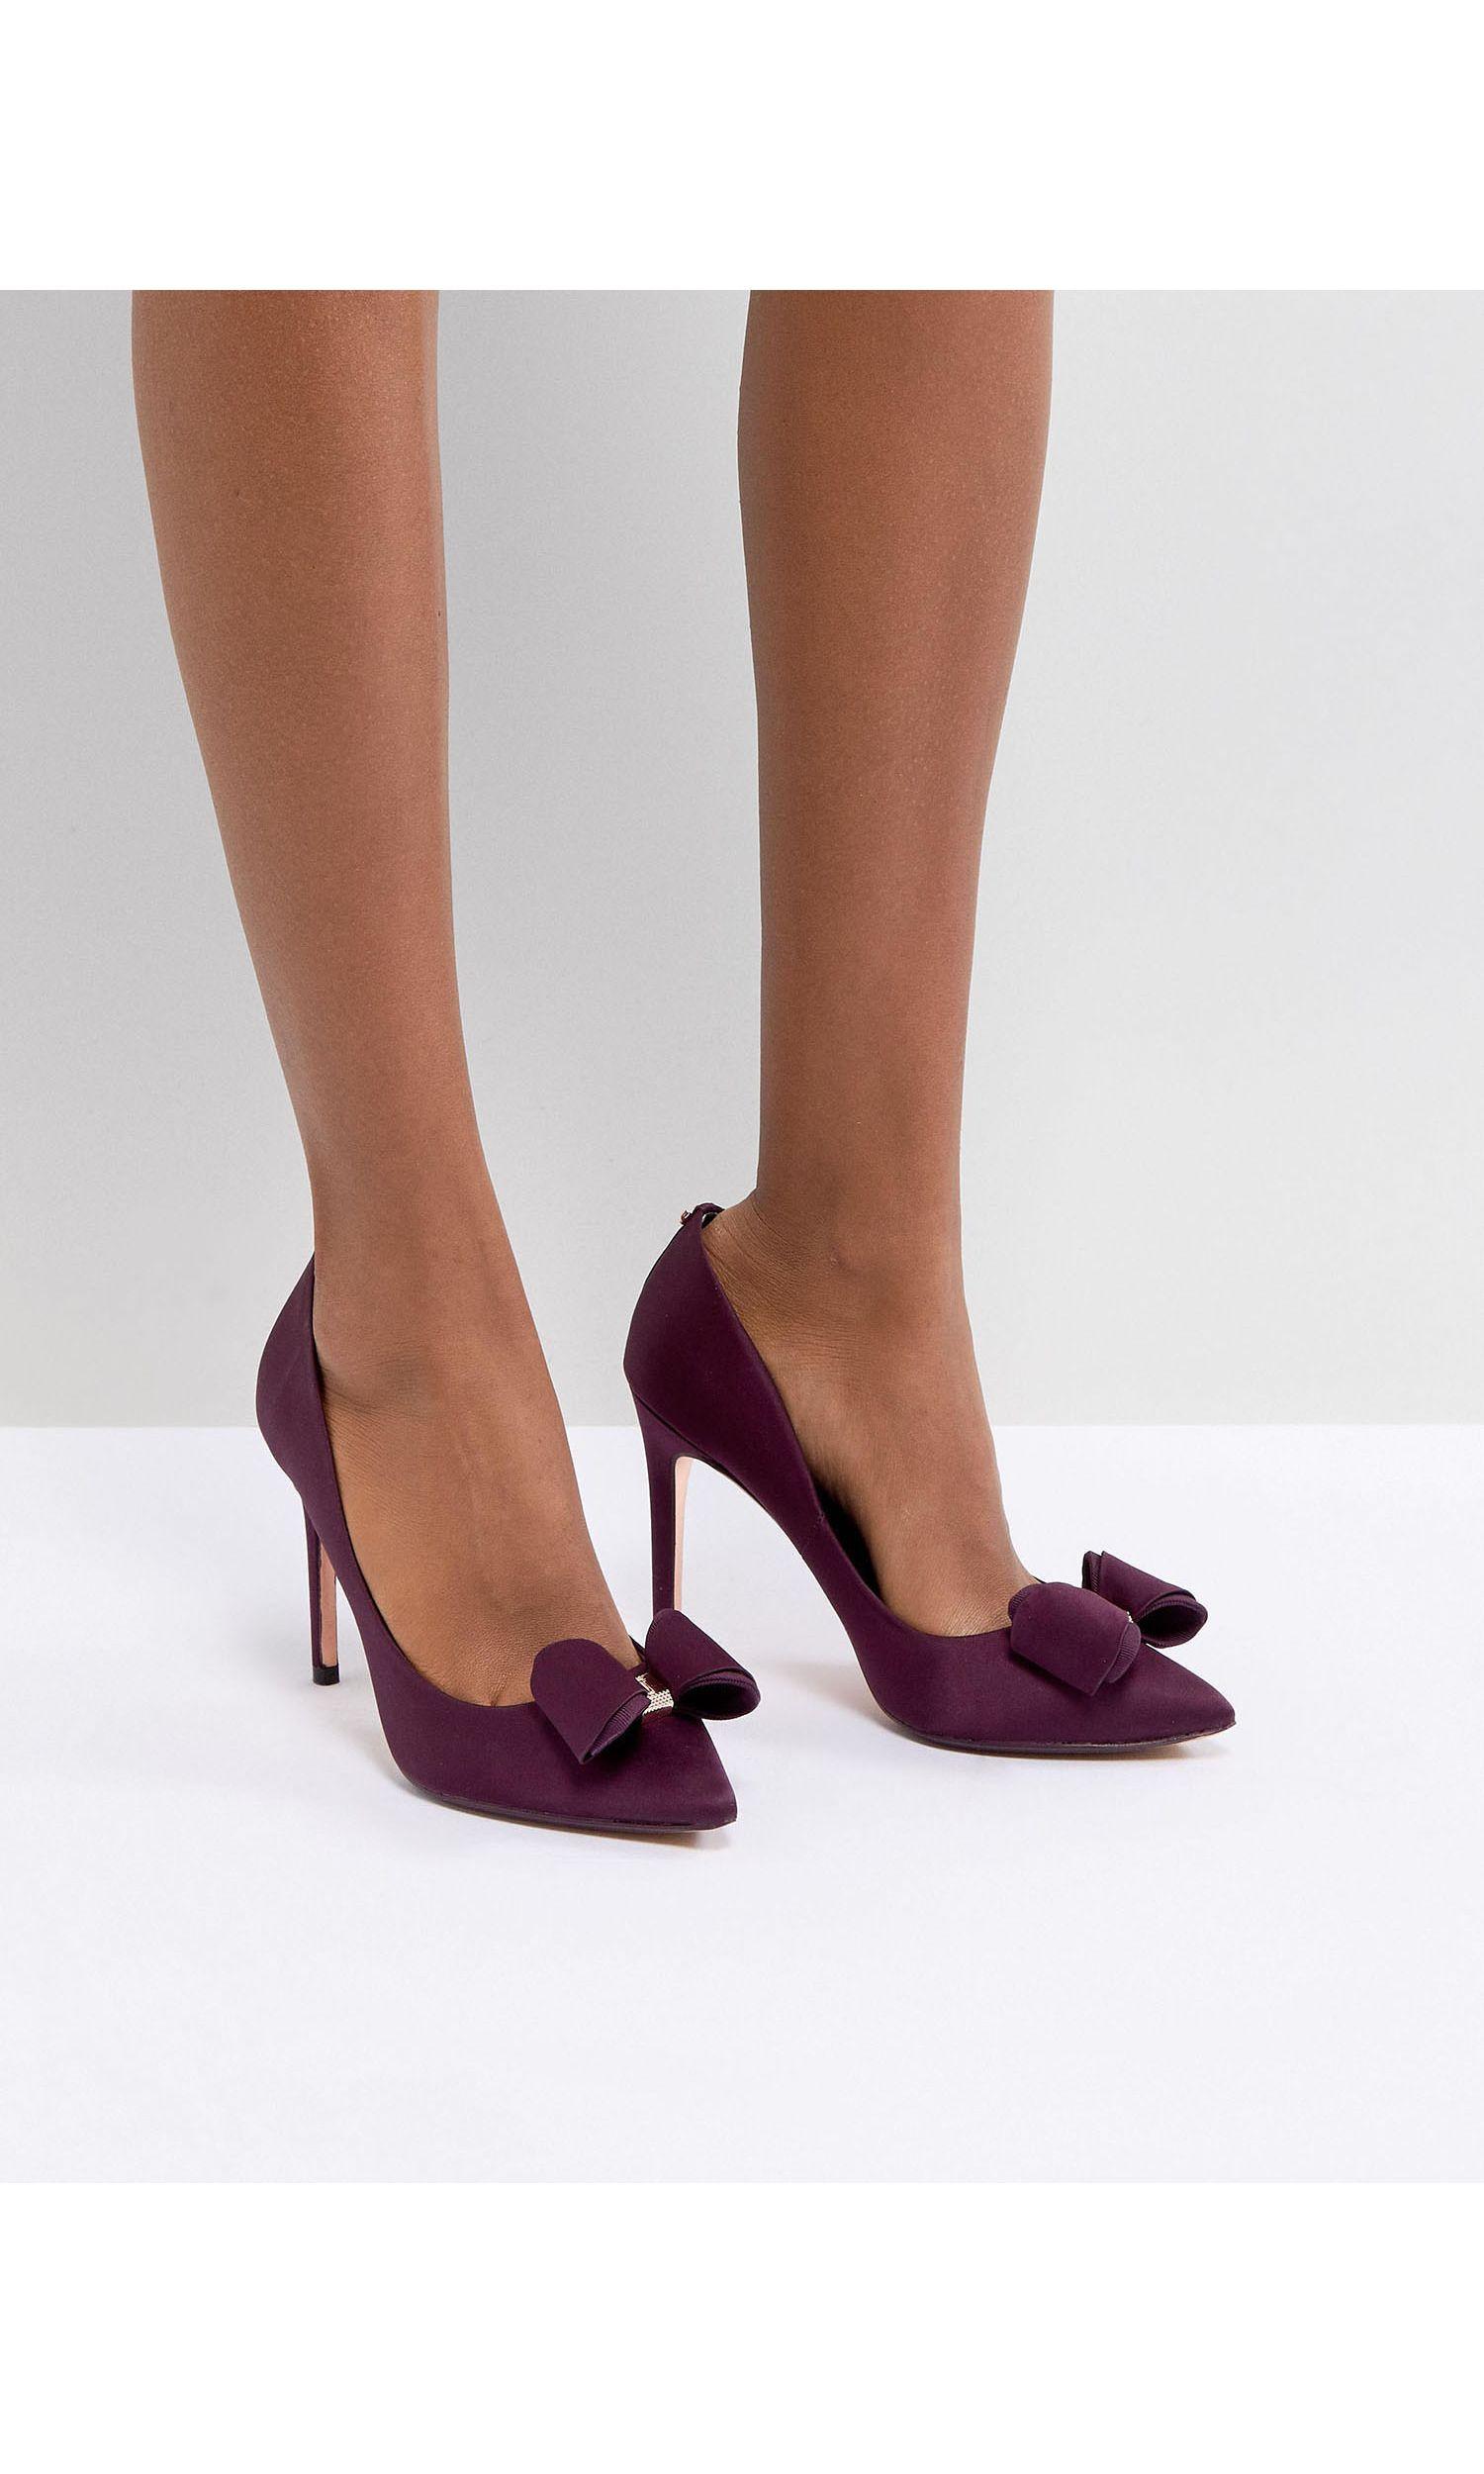 Ted Baker Azeline Heeled Bow Shoe in Purple - Lyst